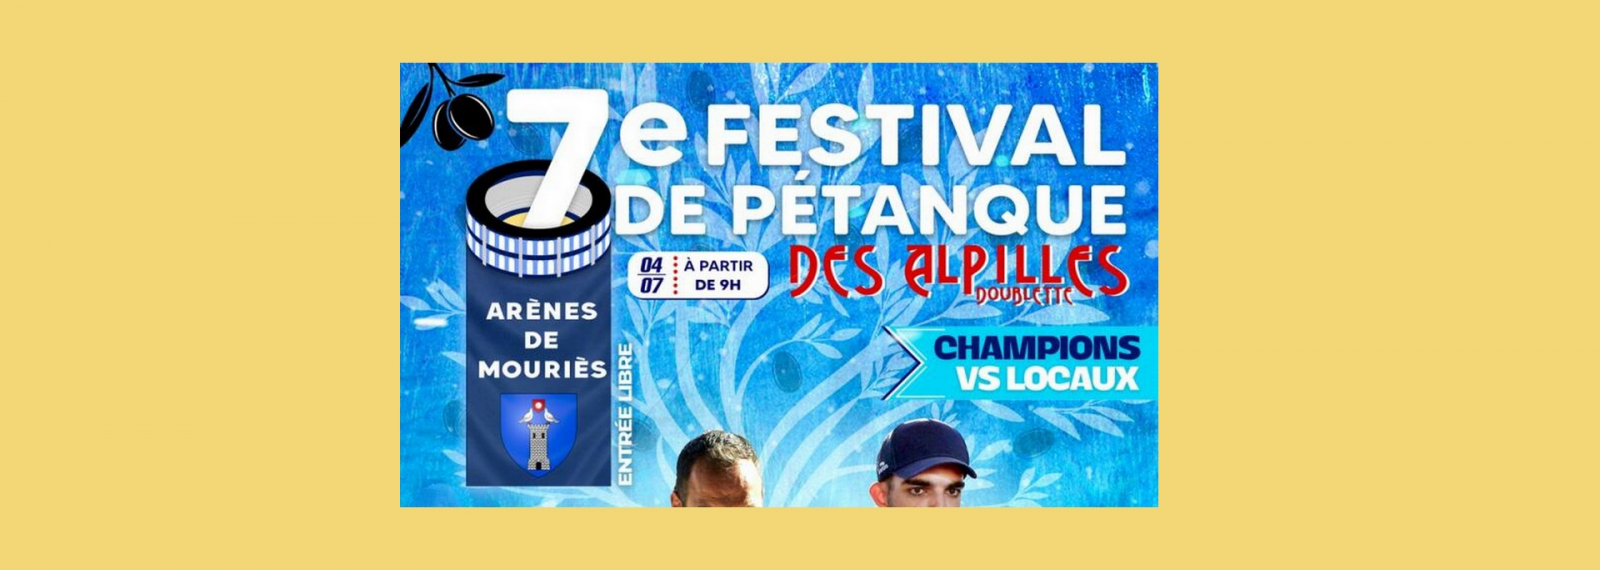 7ème Festival de pétanque des Alpilles Mouriès